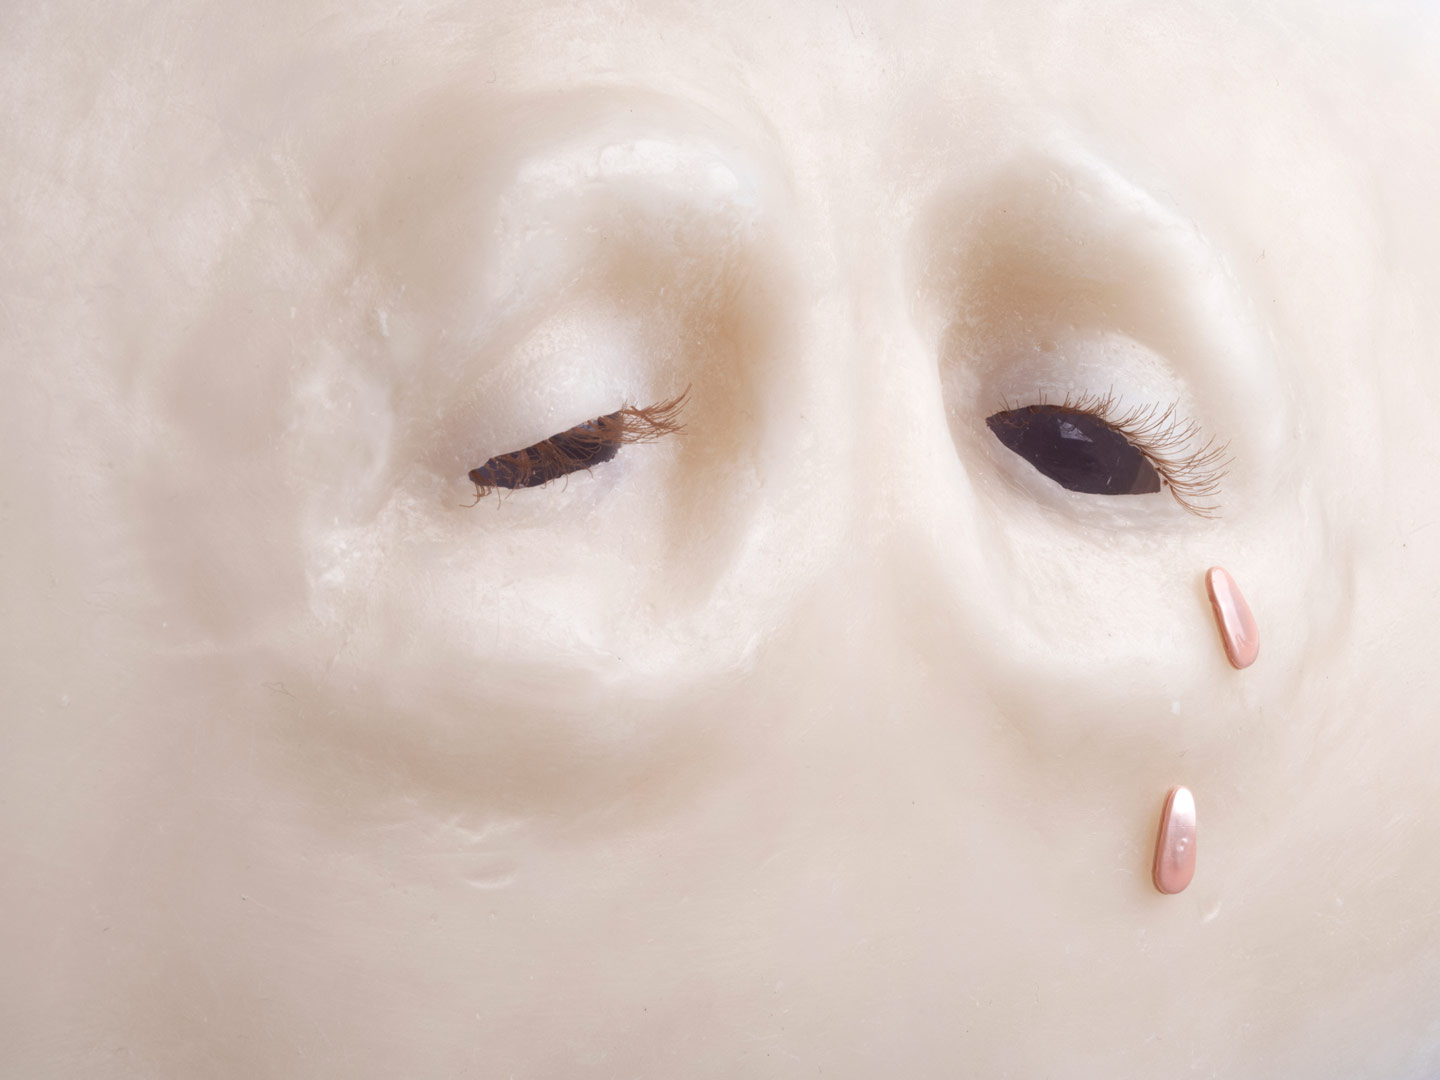 Fragment de l'installation Spleen Spring. Focus sur un regard en cire au nez et aux sourcils absents. Les yeux sont bordés de cils blonds implantés. Les globes oculaires, sont figurés par des sphères de verre transparentes qui laissent échapper deux larmes roses iridescentes.